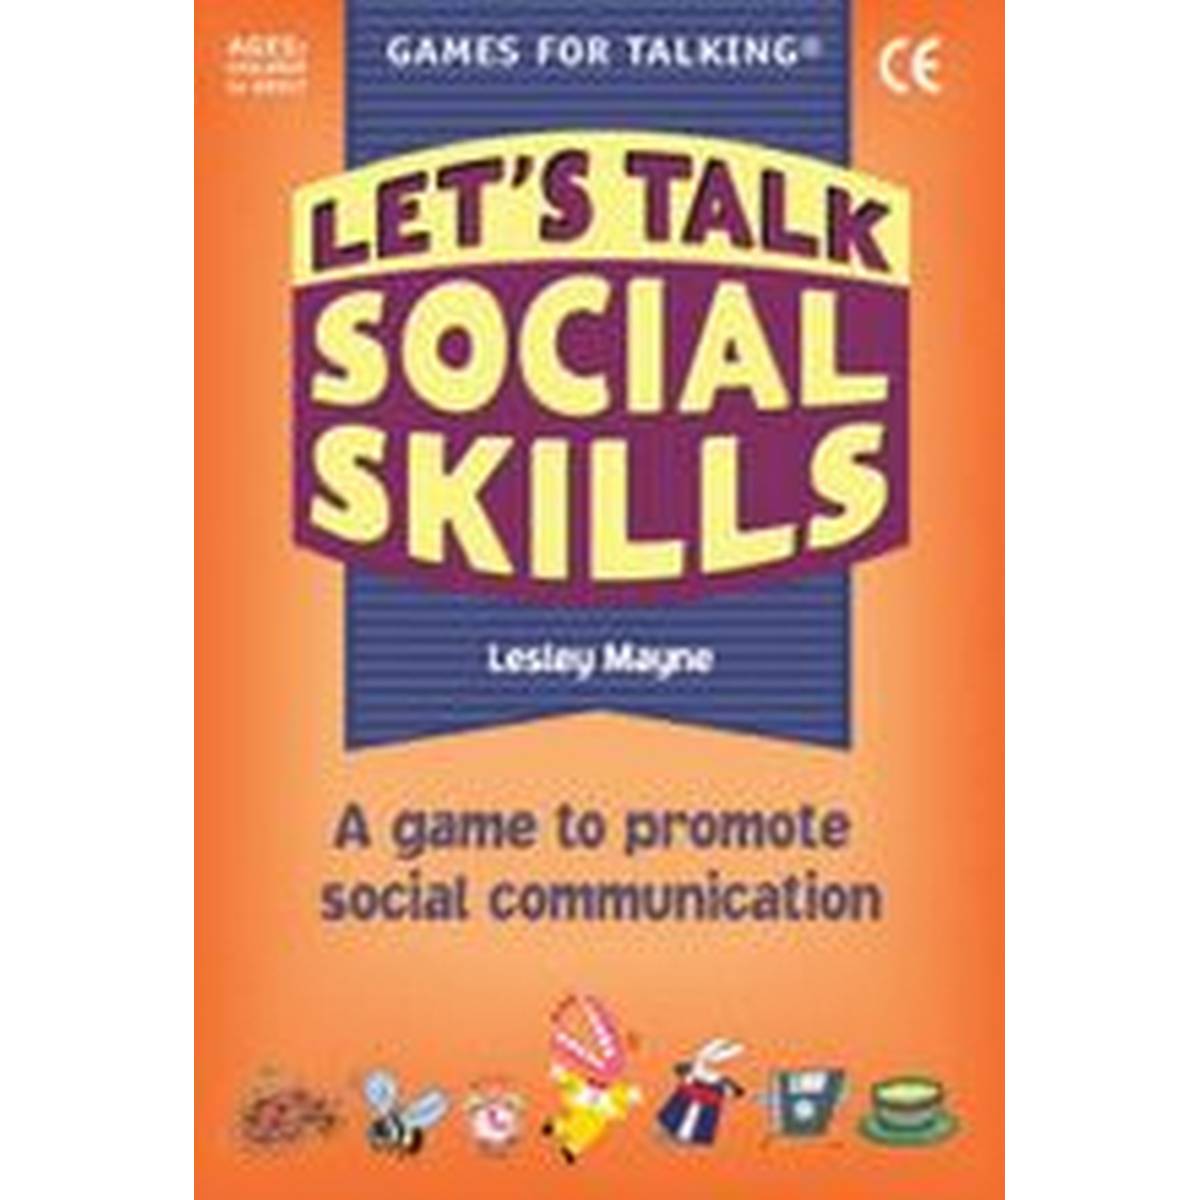 Games for Talking: Let's Talk Social Skills